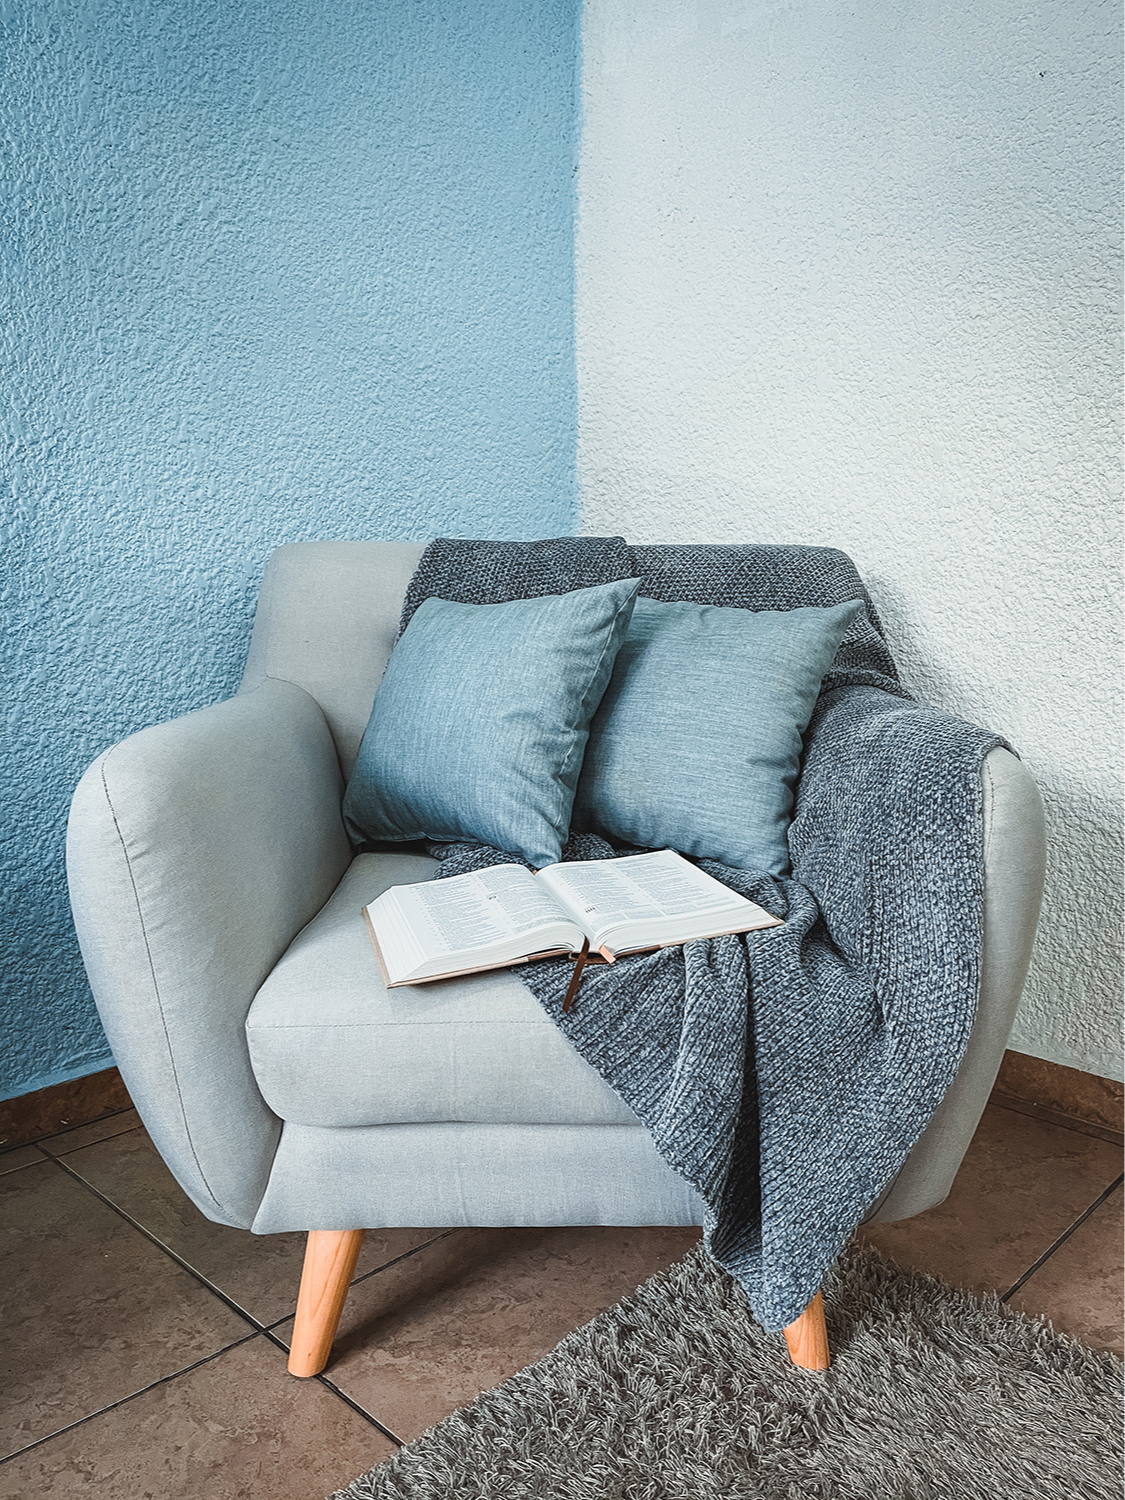 Чем заменить диван в гостиной: 6 необычных идей :: Дизайн :: РБКНедвижимость